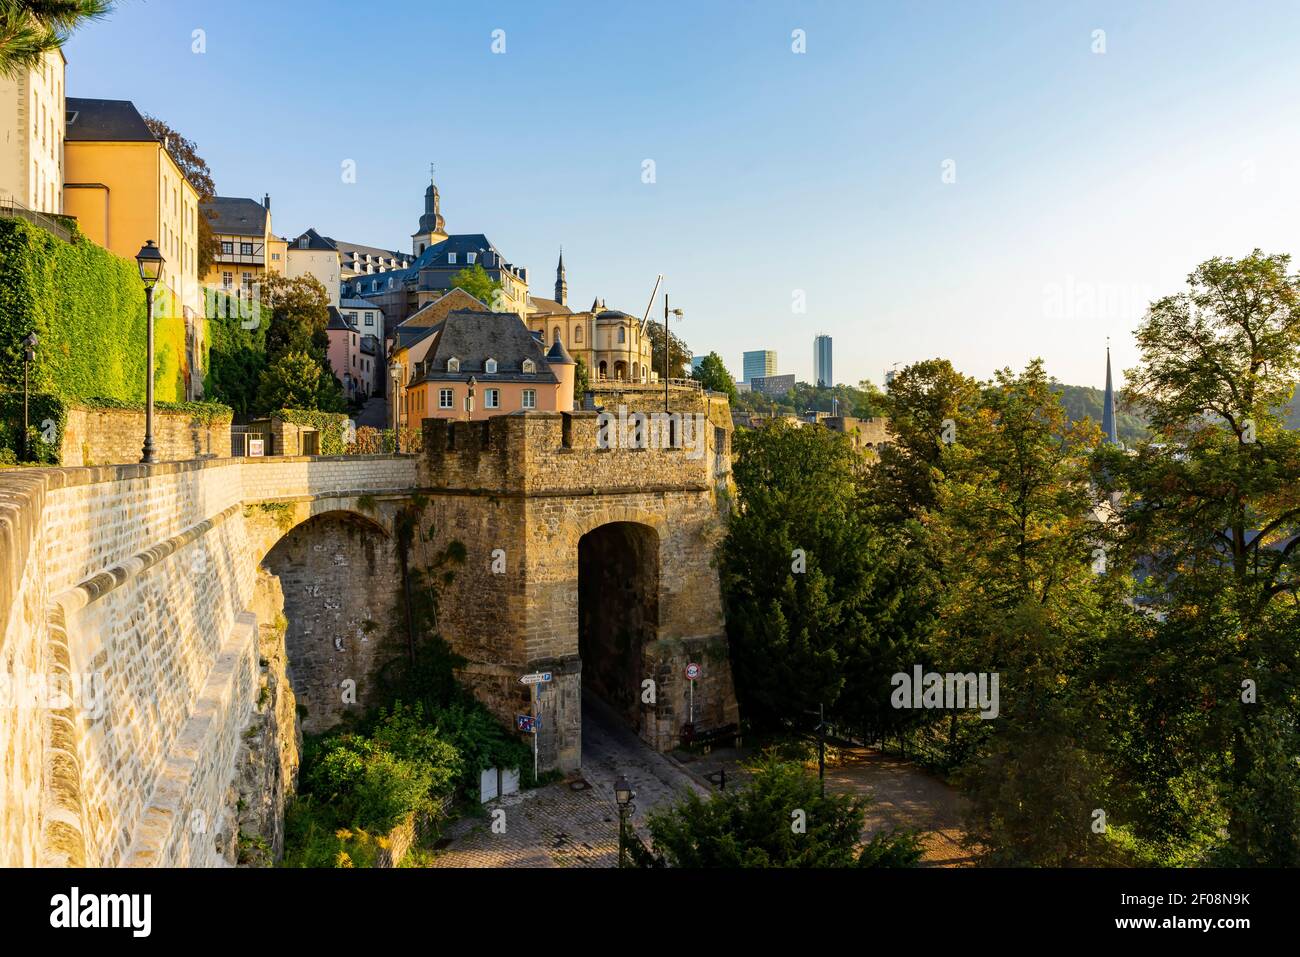 La histórica y bella vista magnífica del Grund, Luxemburgo Foto de stock